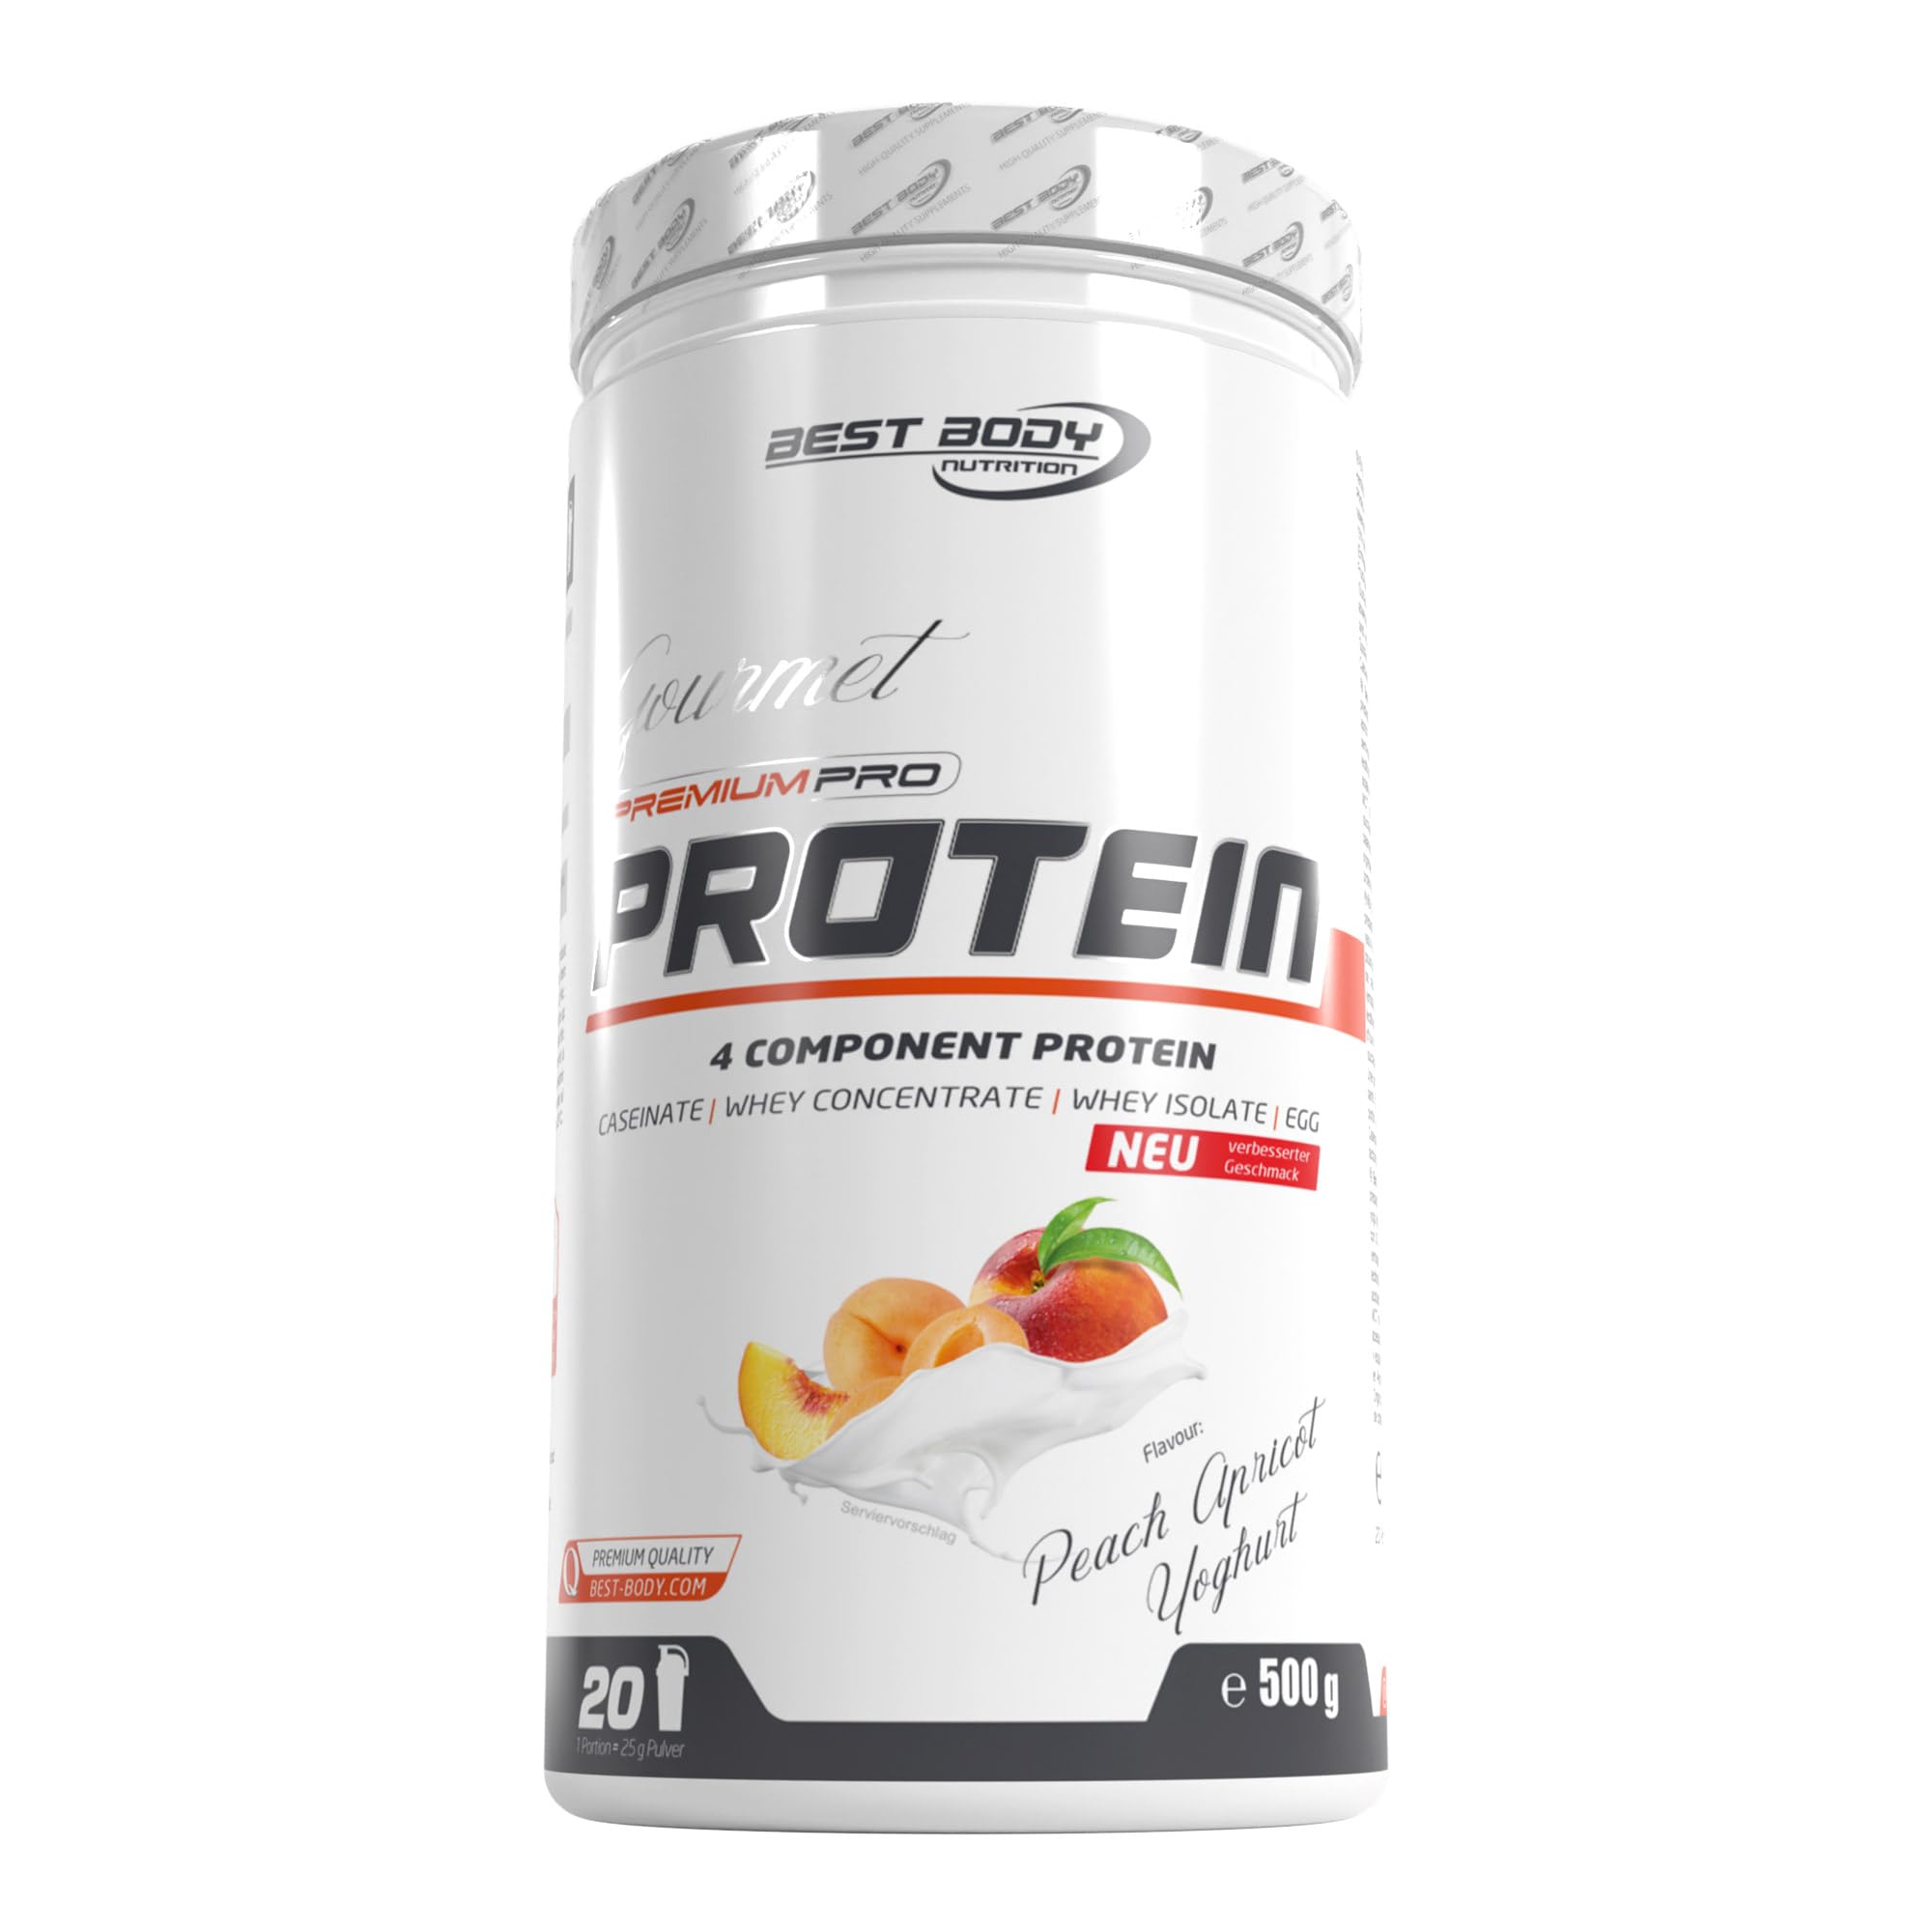 Best Body Nutrition Gourmet Premium Pro Protein, Peach Apricot Yoghurt Dose, 4 Komponenten Protein Shake: Caseinat, Whey Konzentrat, Whey Isolat, Eiprotein, 500 g Dose